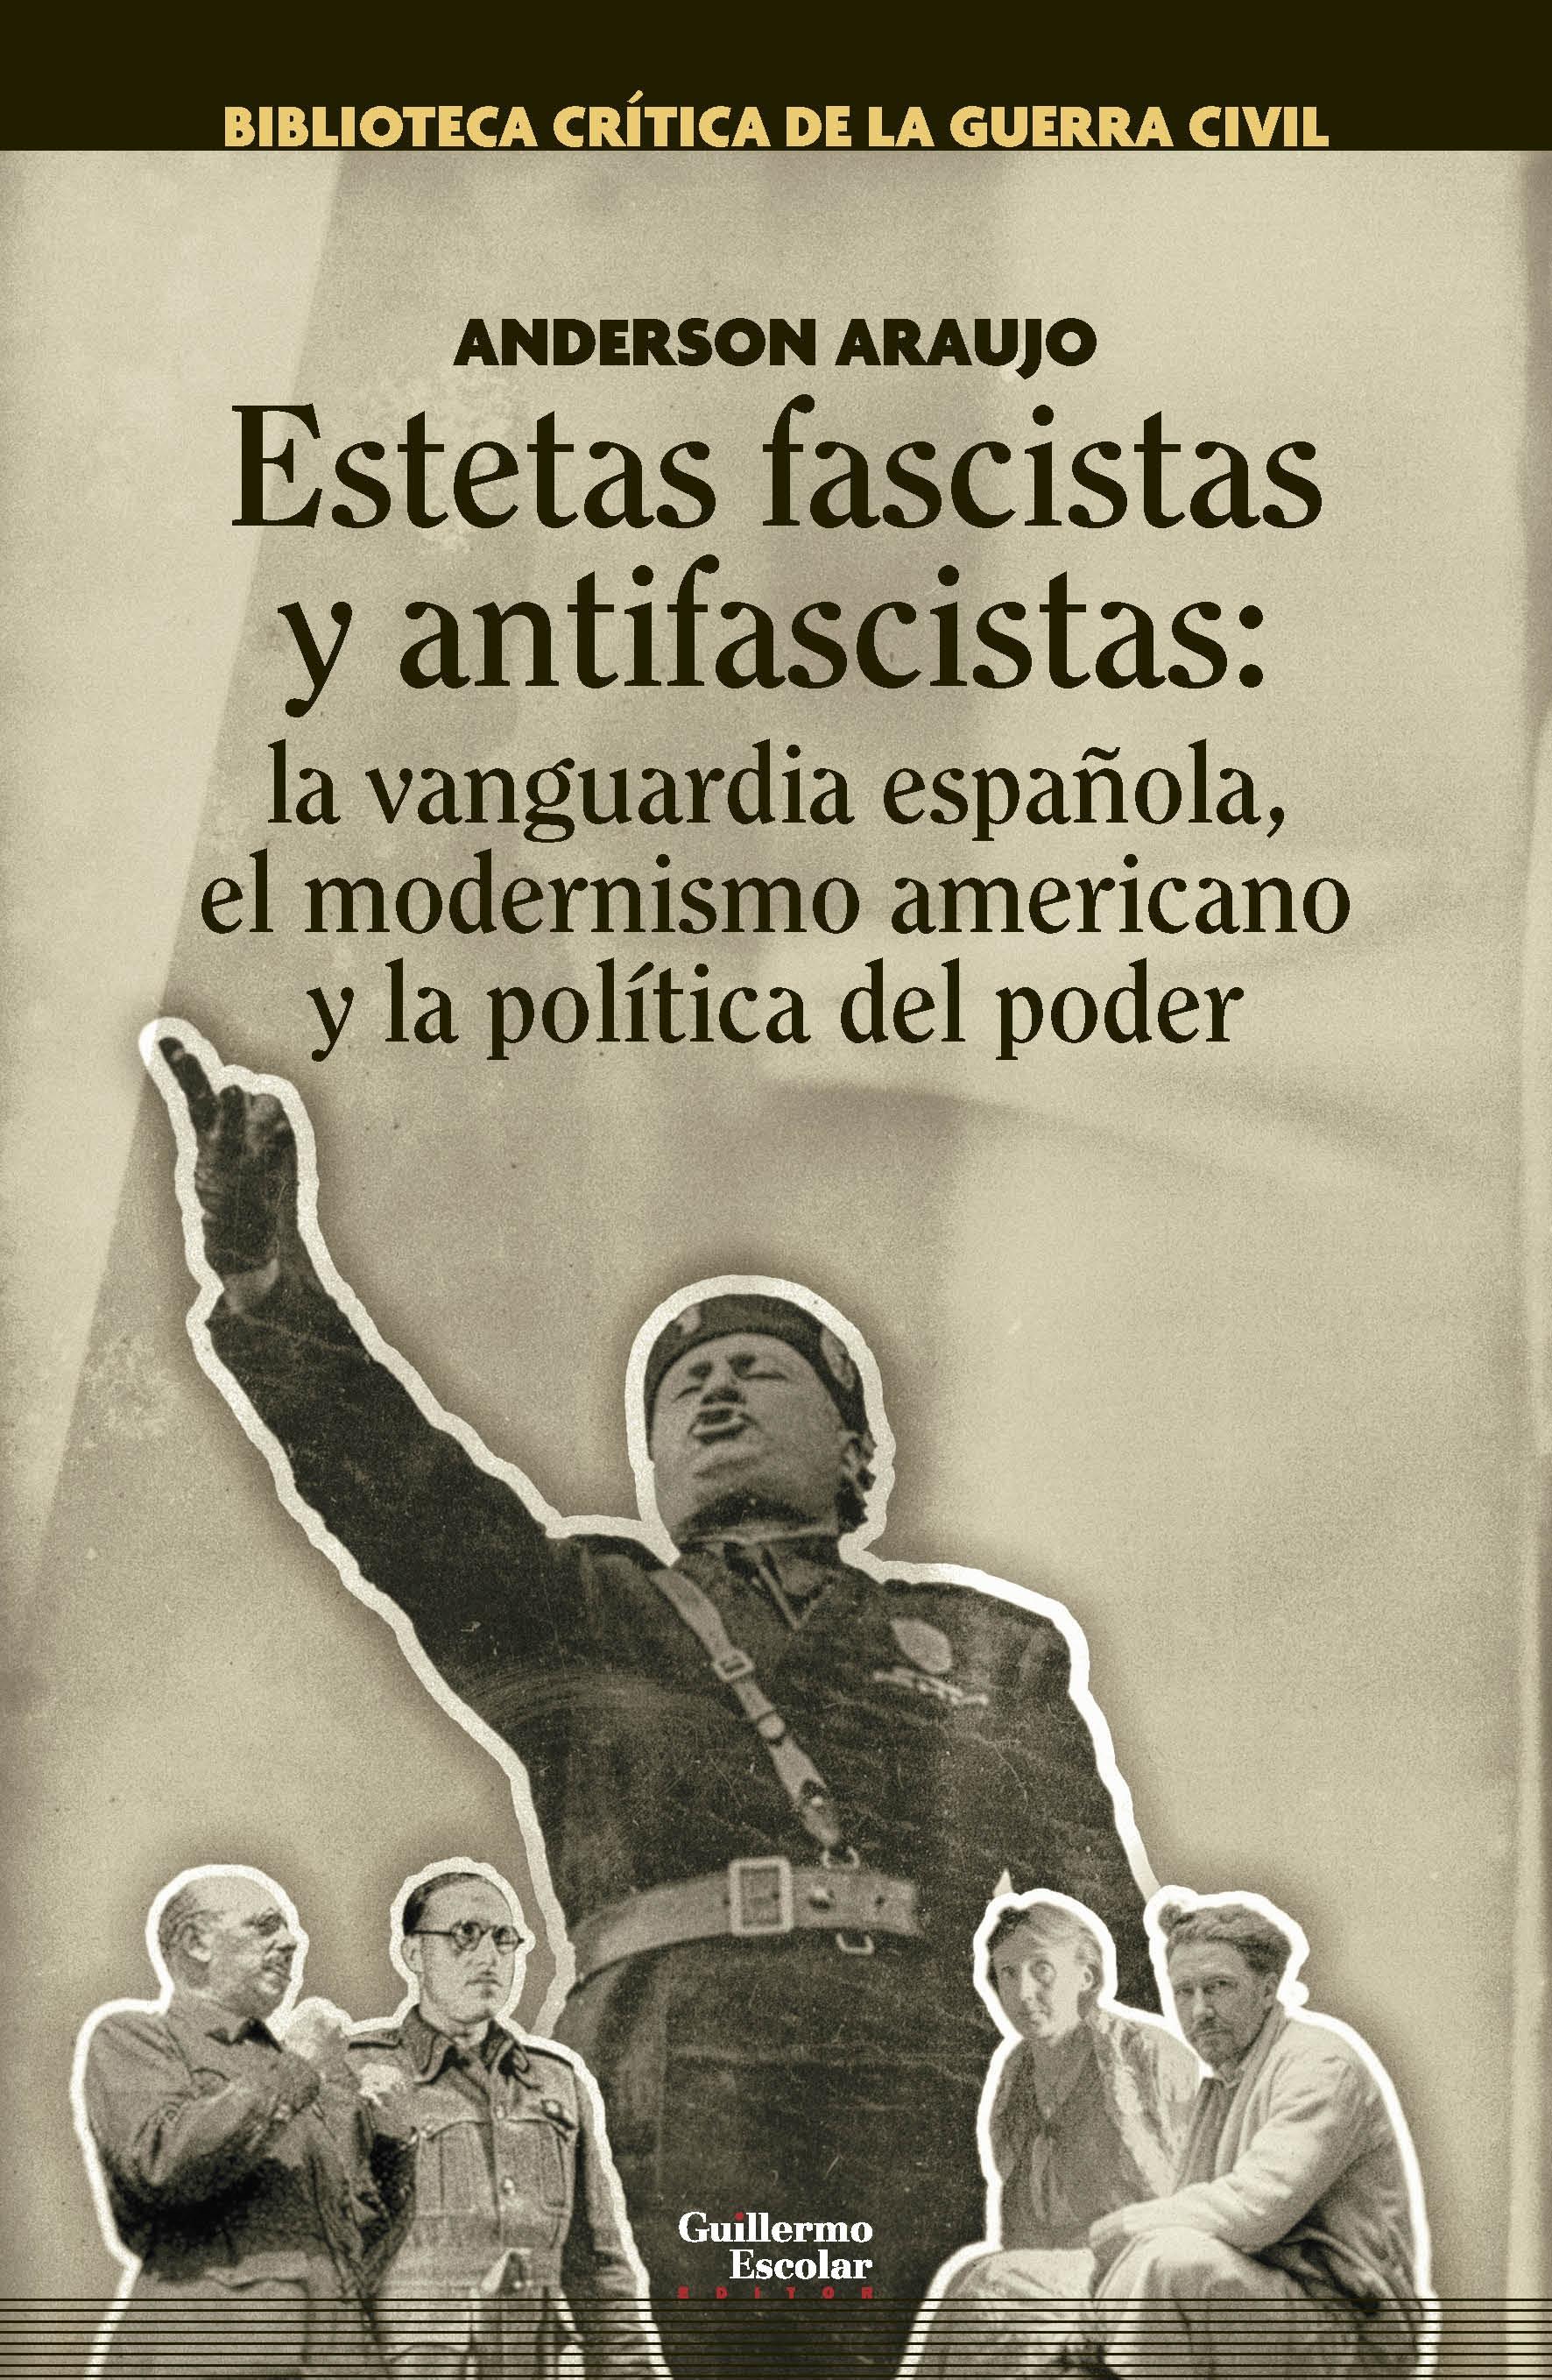 Estetas fascistas y antifascistas "La vanguardia española, el modernismo americano y la política del poder"